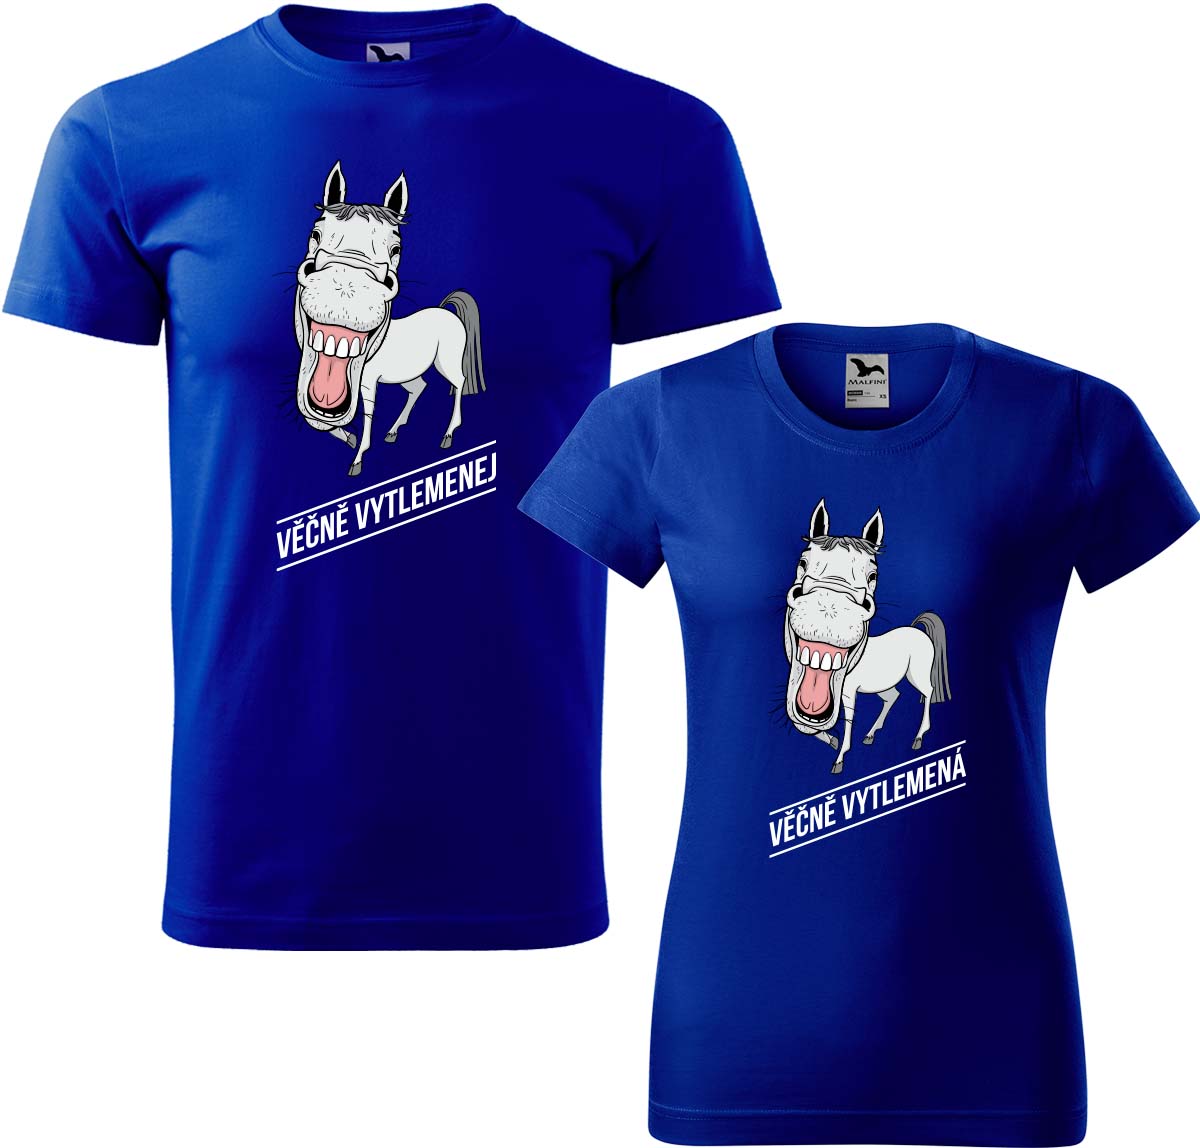 Trička pro páry - Věčně vytlemenej a věčně vytlemená Barva: Královská modrá (05), Velikost dámské tričko: S, Velikost pánské tričko: XL